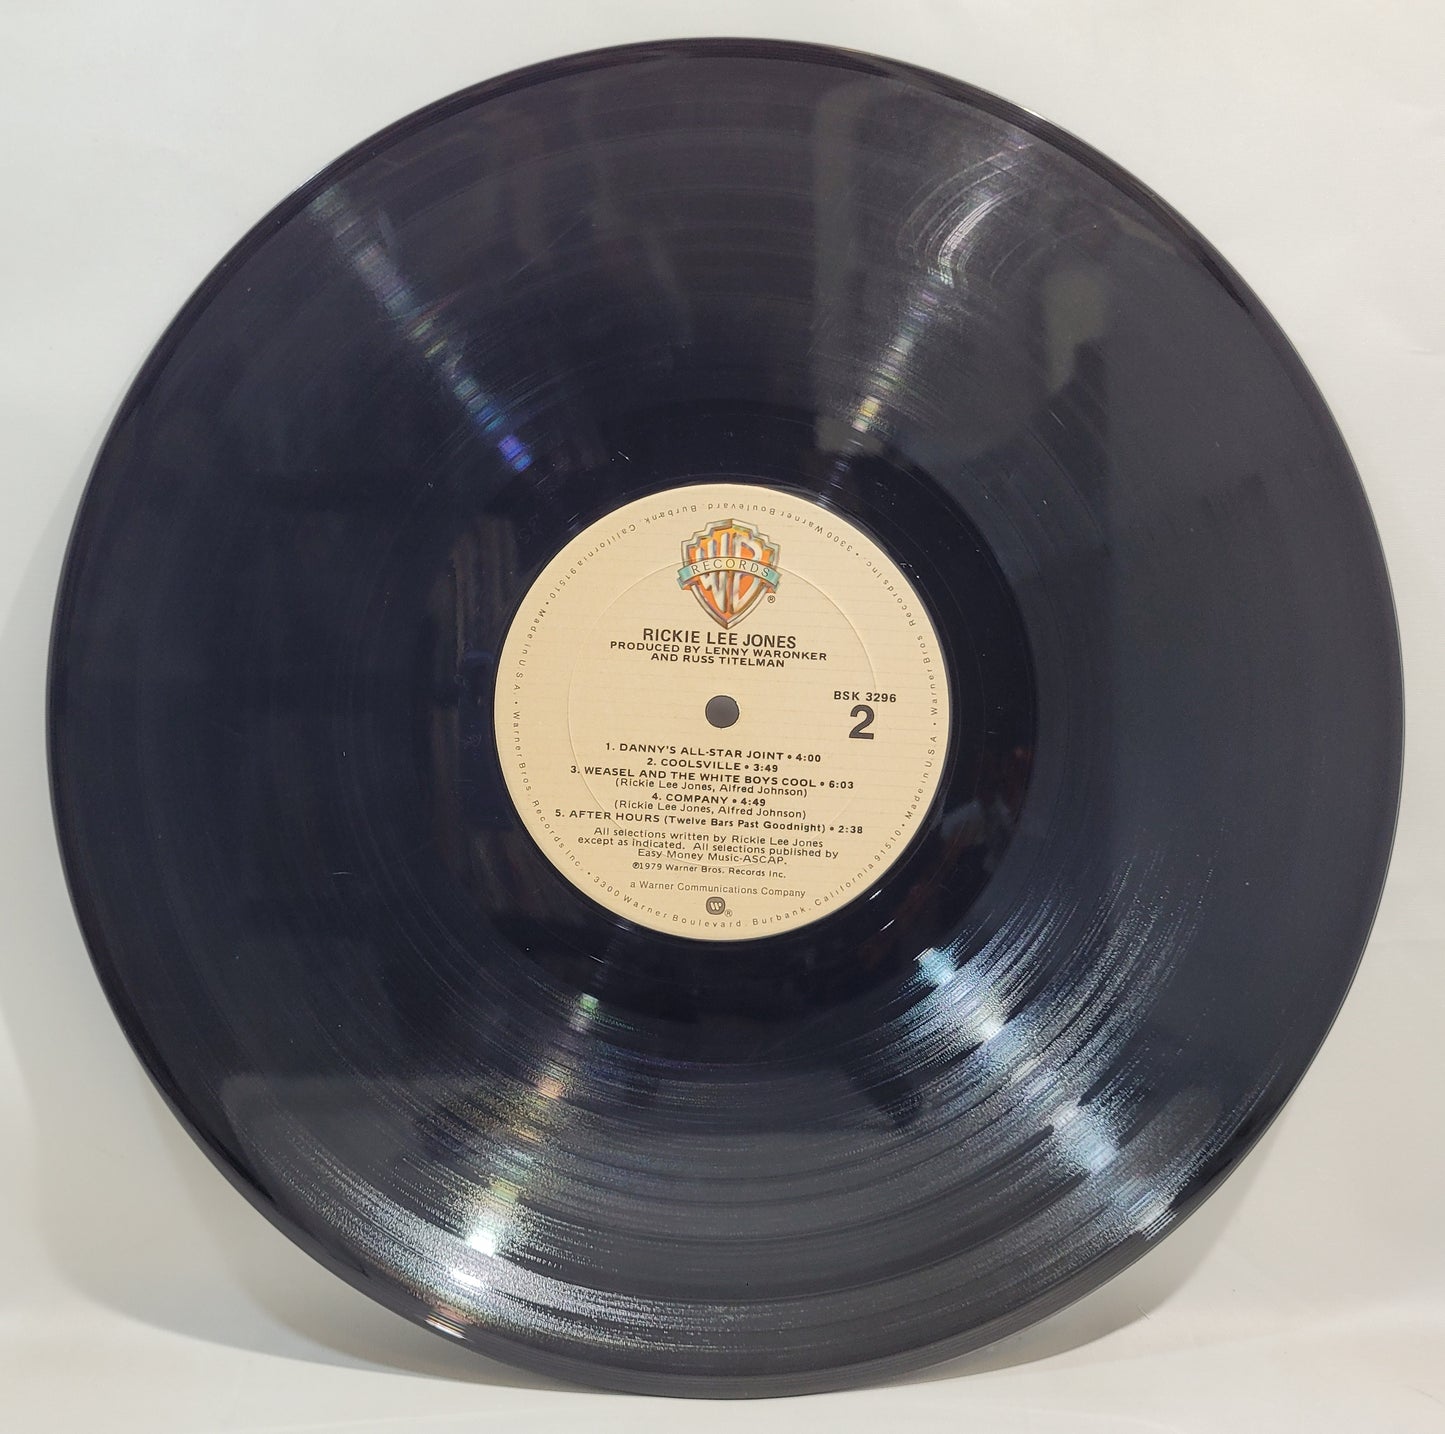 Rickie Lee Jones - Rickie Lee Jones [Vinyl Record LP] [C]